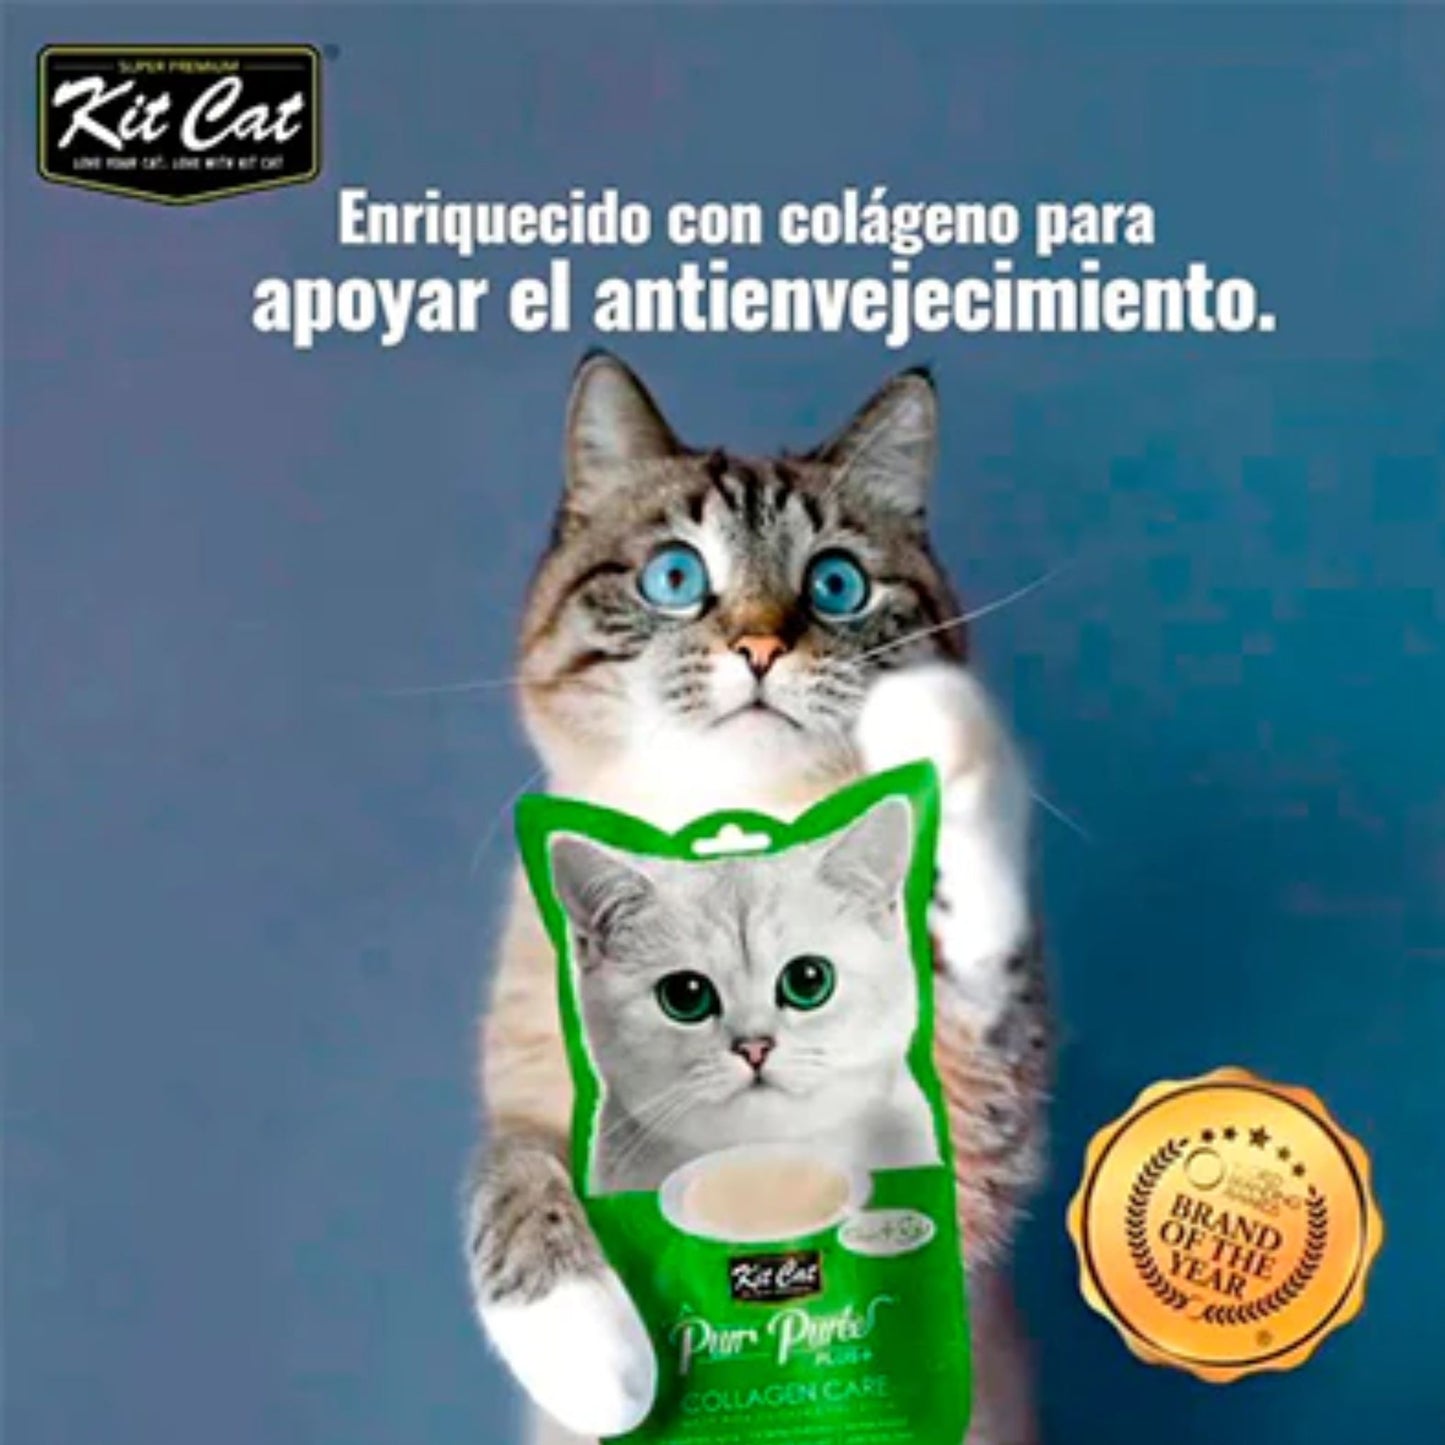 Kit Cat Purr Puree Plus Colageno Pollo 60 g